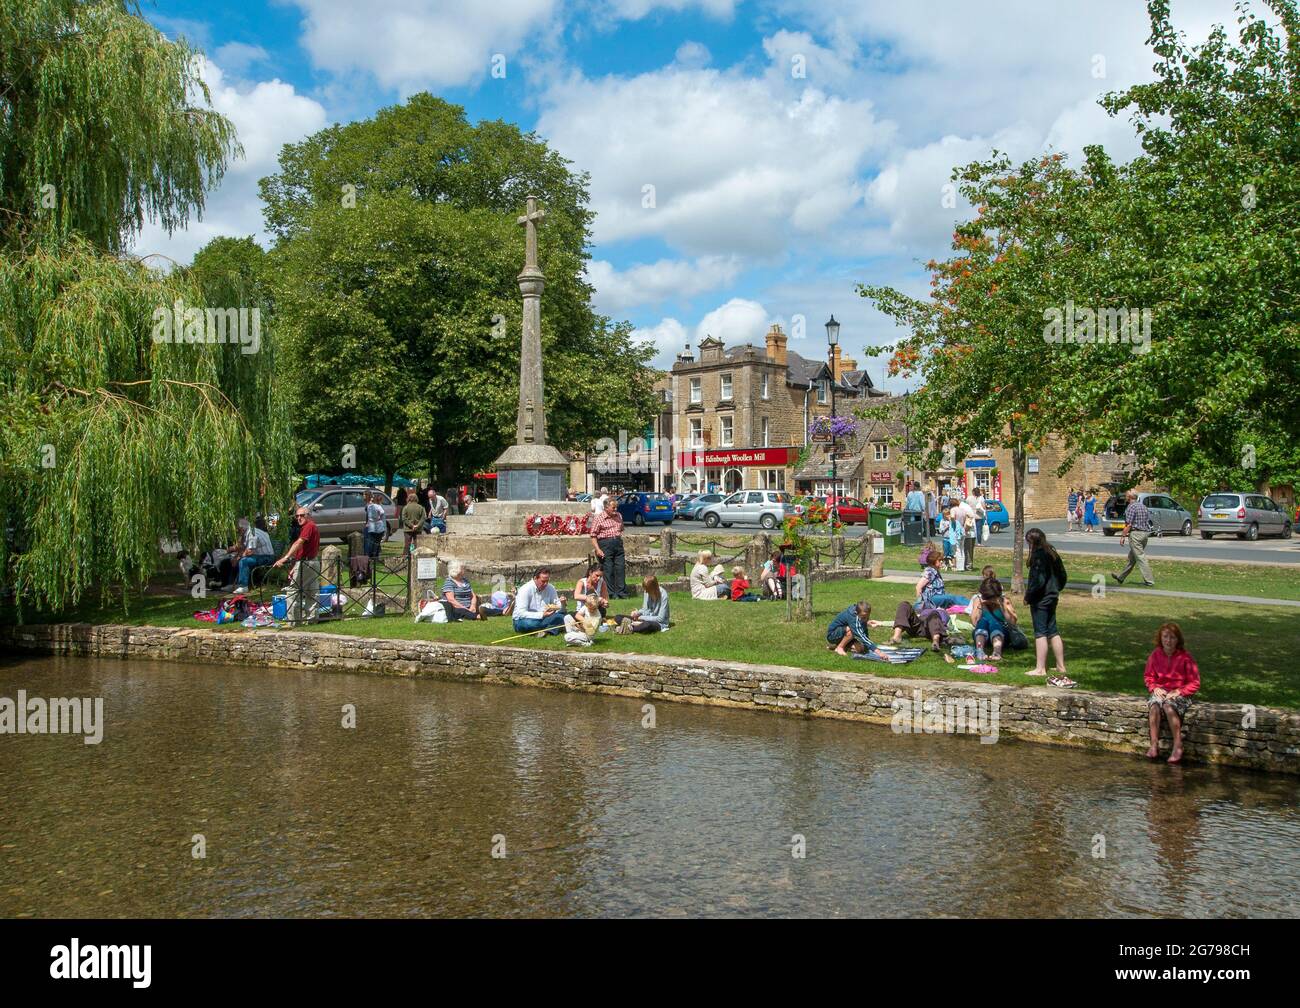 Reino Unido, GL Gloucestershire, Bourton-on-the-Water, gente sentada en las orillas del río Windrush bajo el sol, niños jugando. Bourton-on-the-Water es conocida como la Venecia de los Cotswolds. Aquí es donde comienza el Camino del Corazón de Inglaterra. Foto de stock